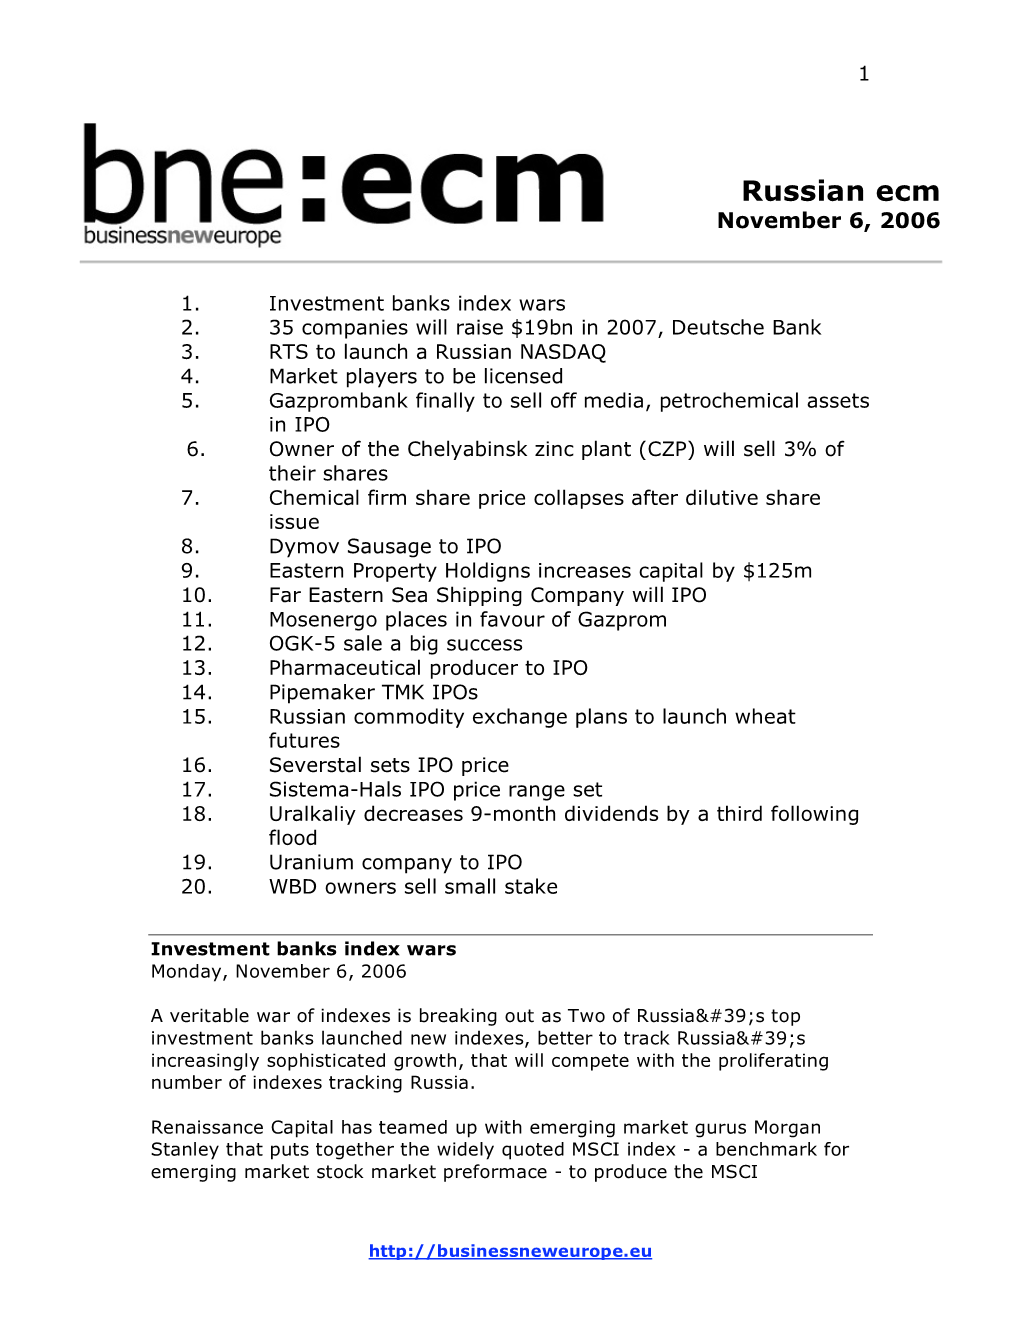 Russian Ecm November 6, 2006